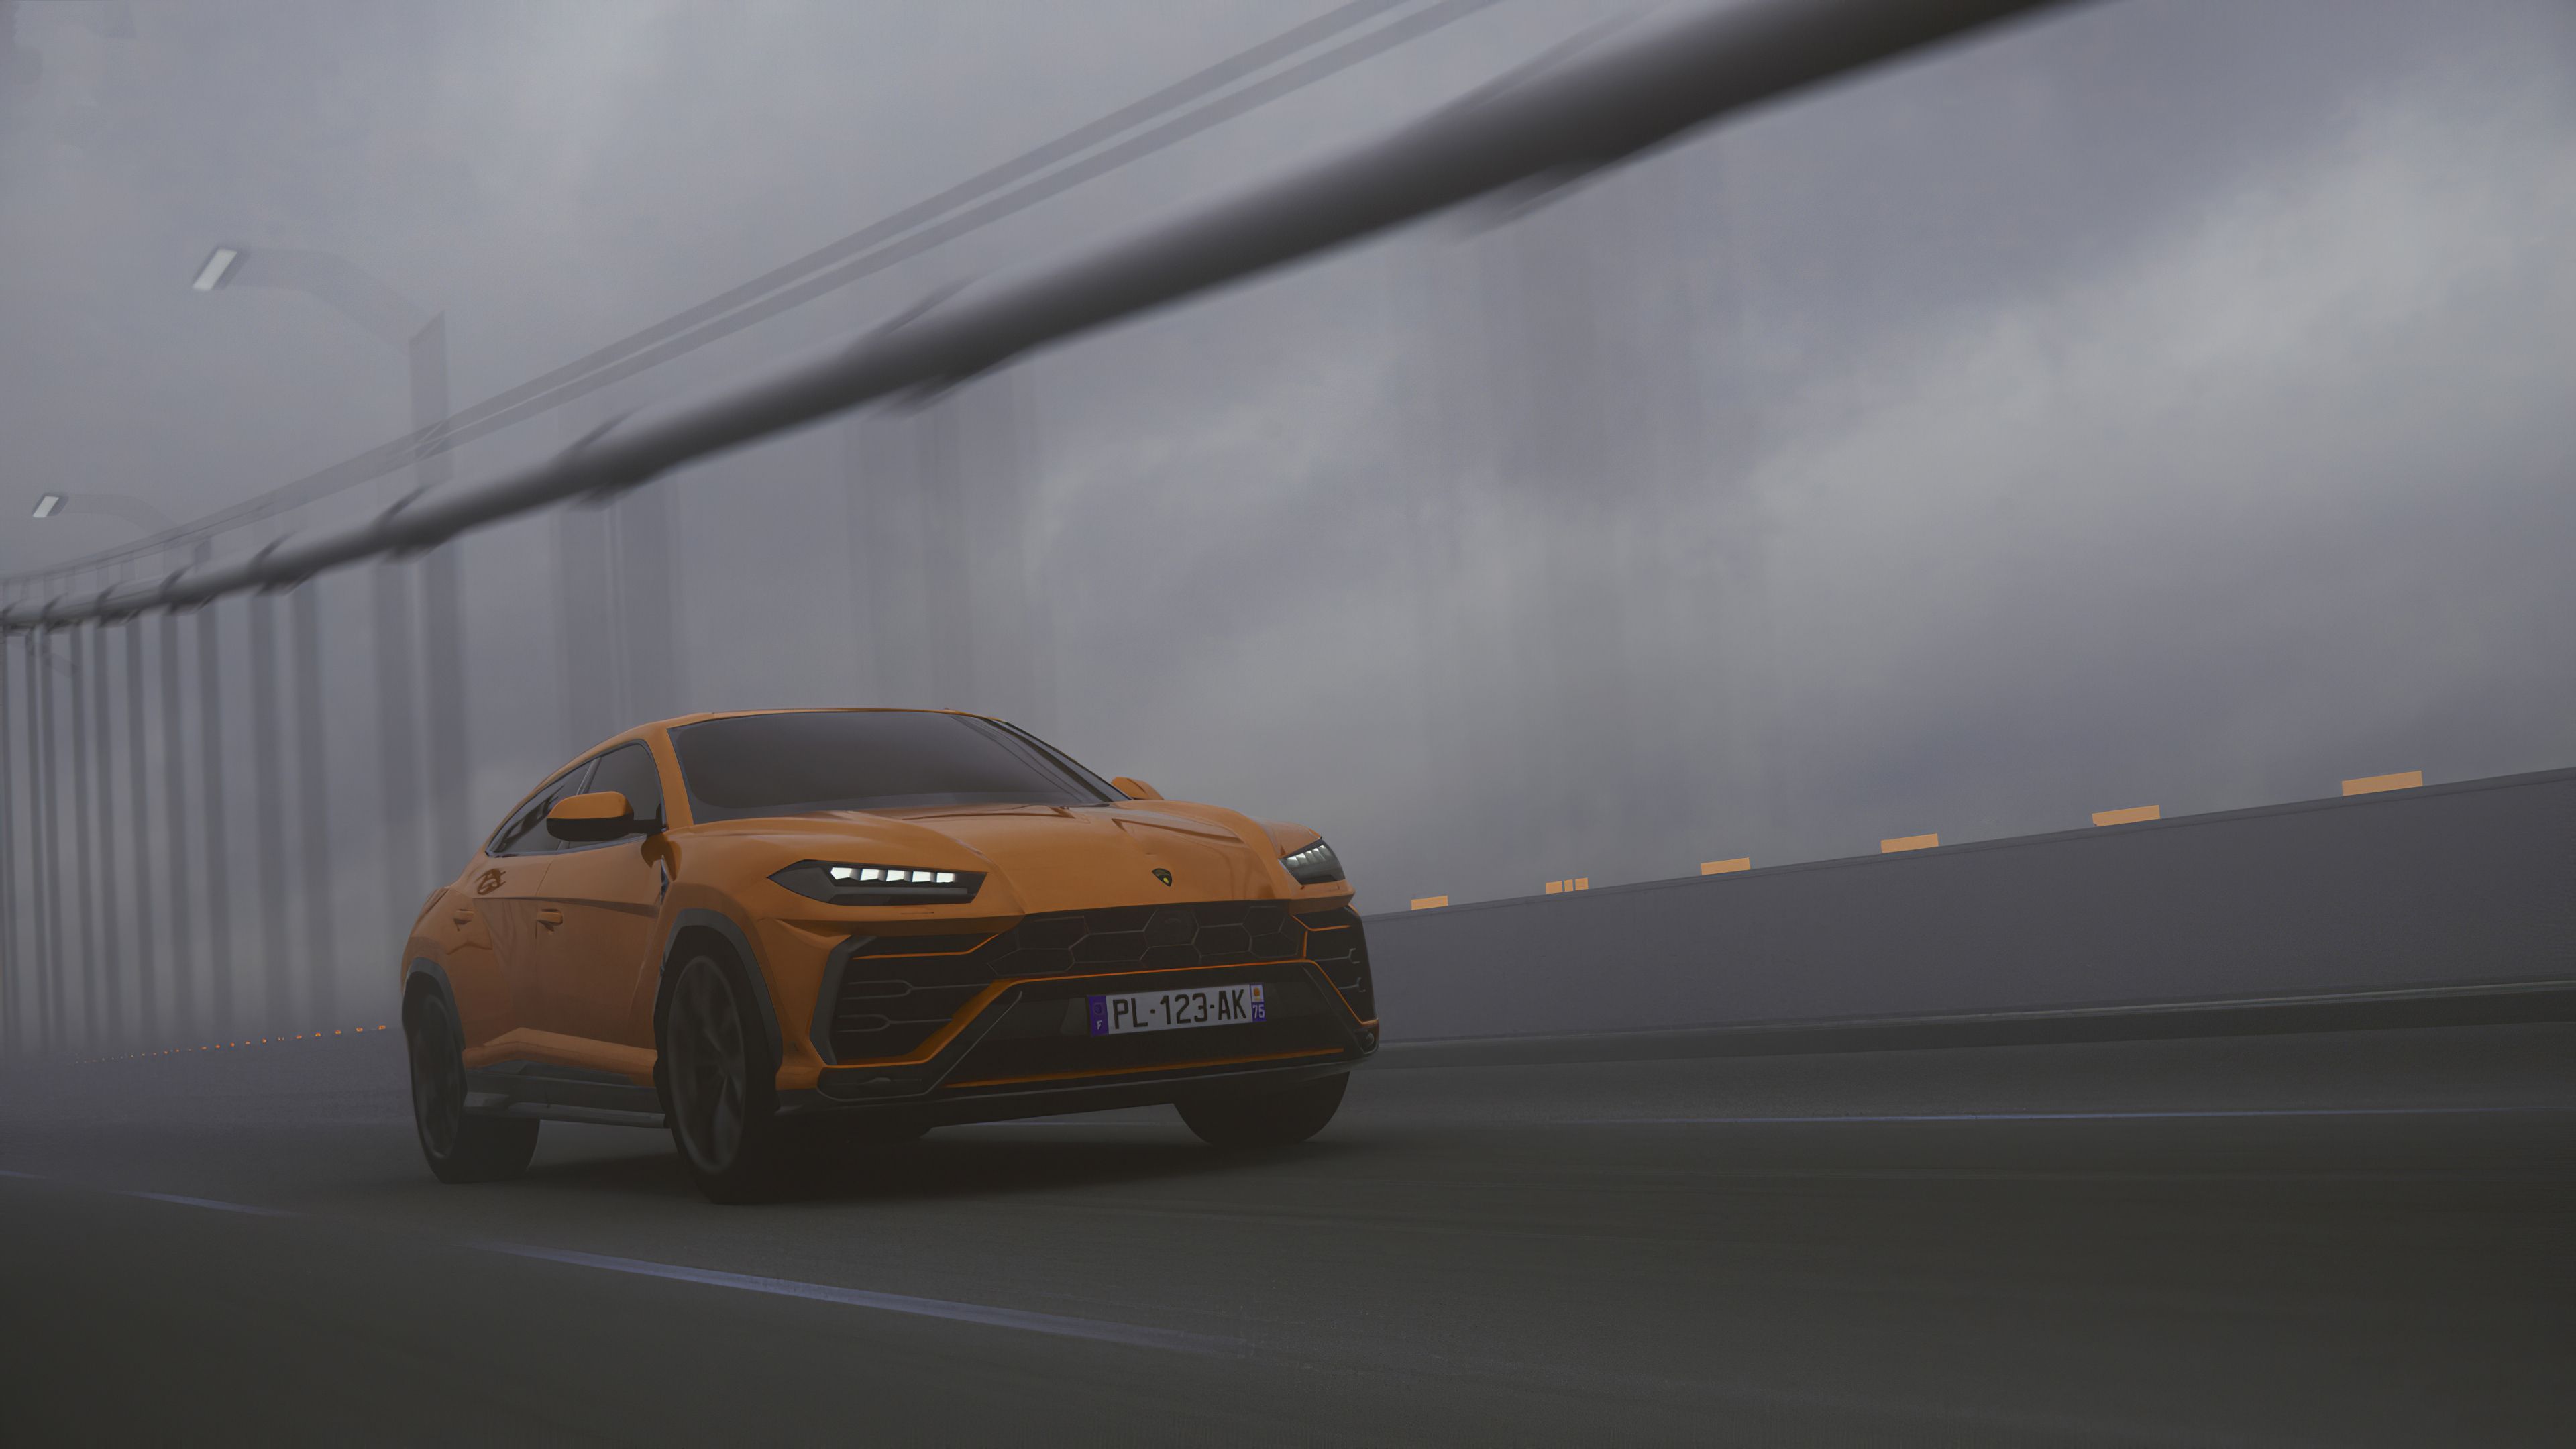 Lamborghini Urus SUV Orange, HD Cars, 4k Wallpaper, Image, Background, Photo and Picture